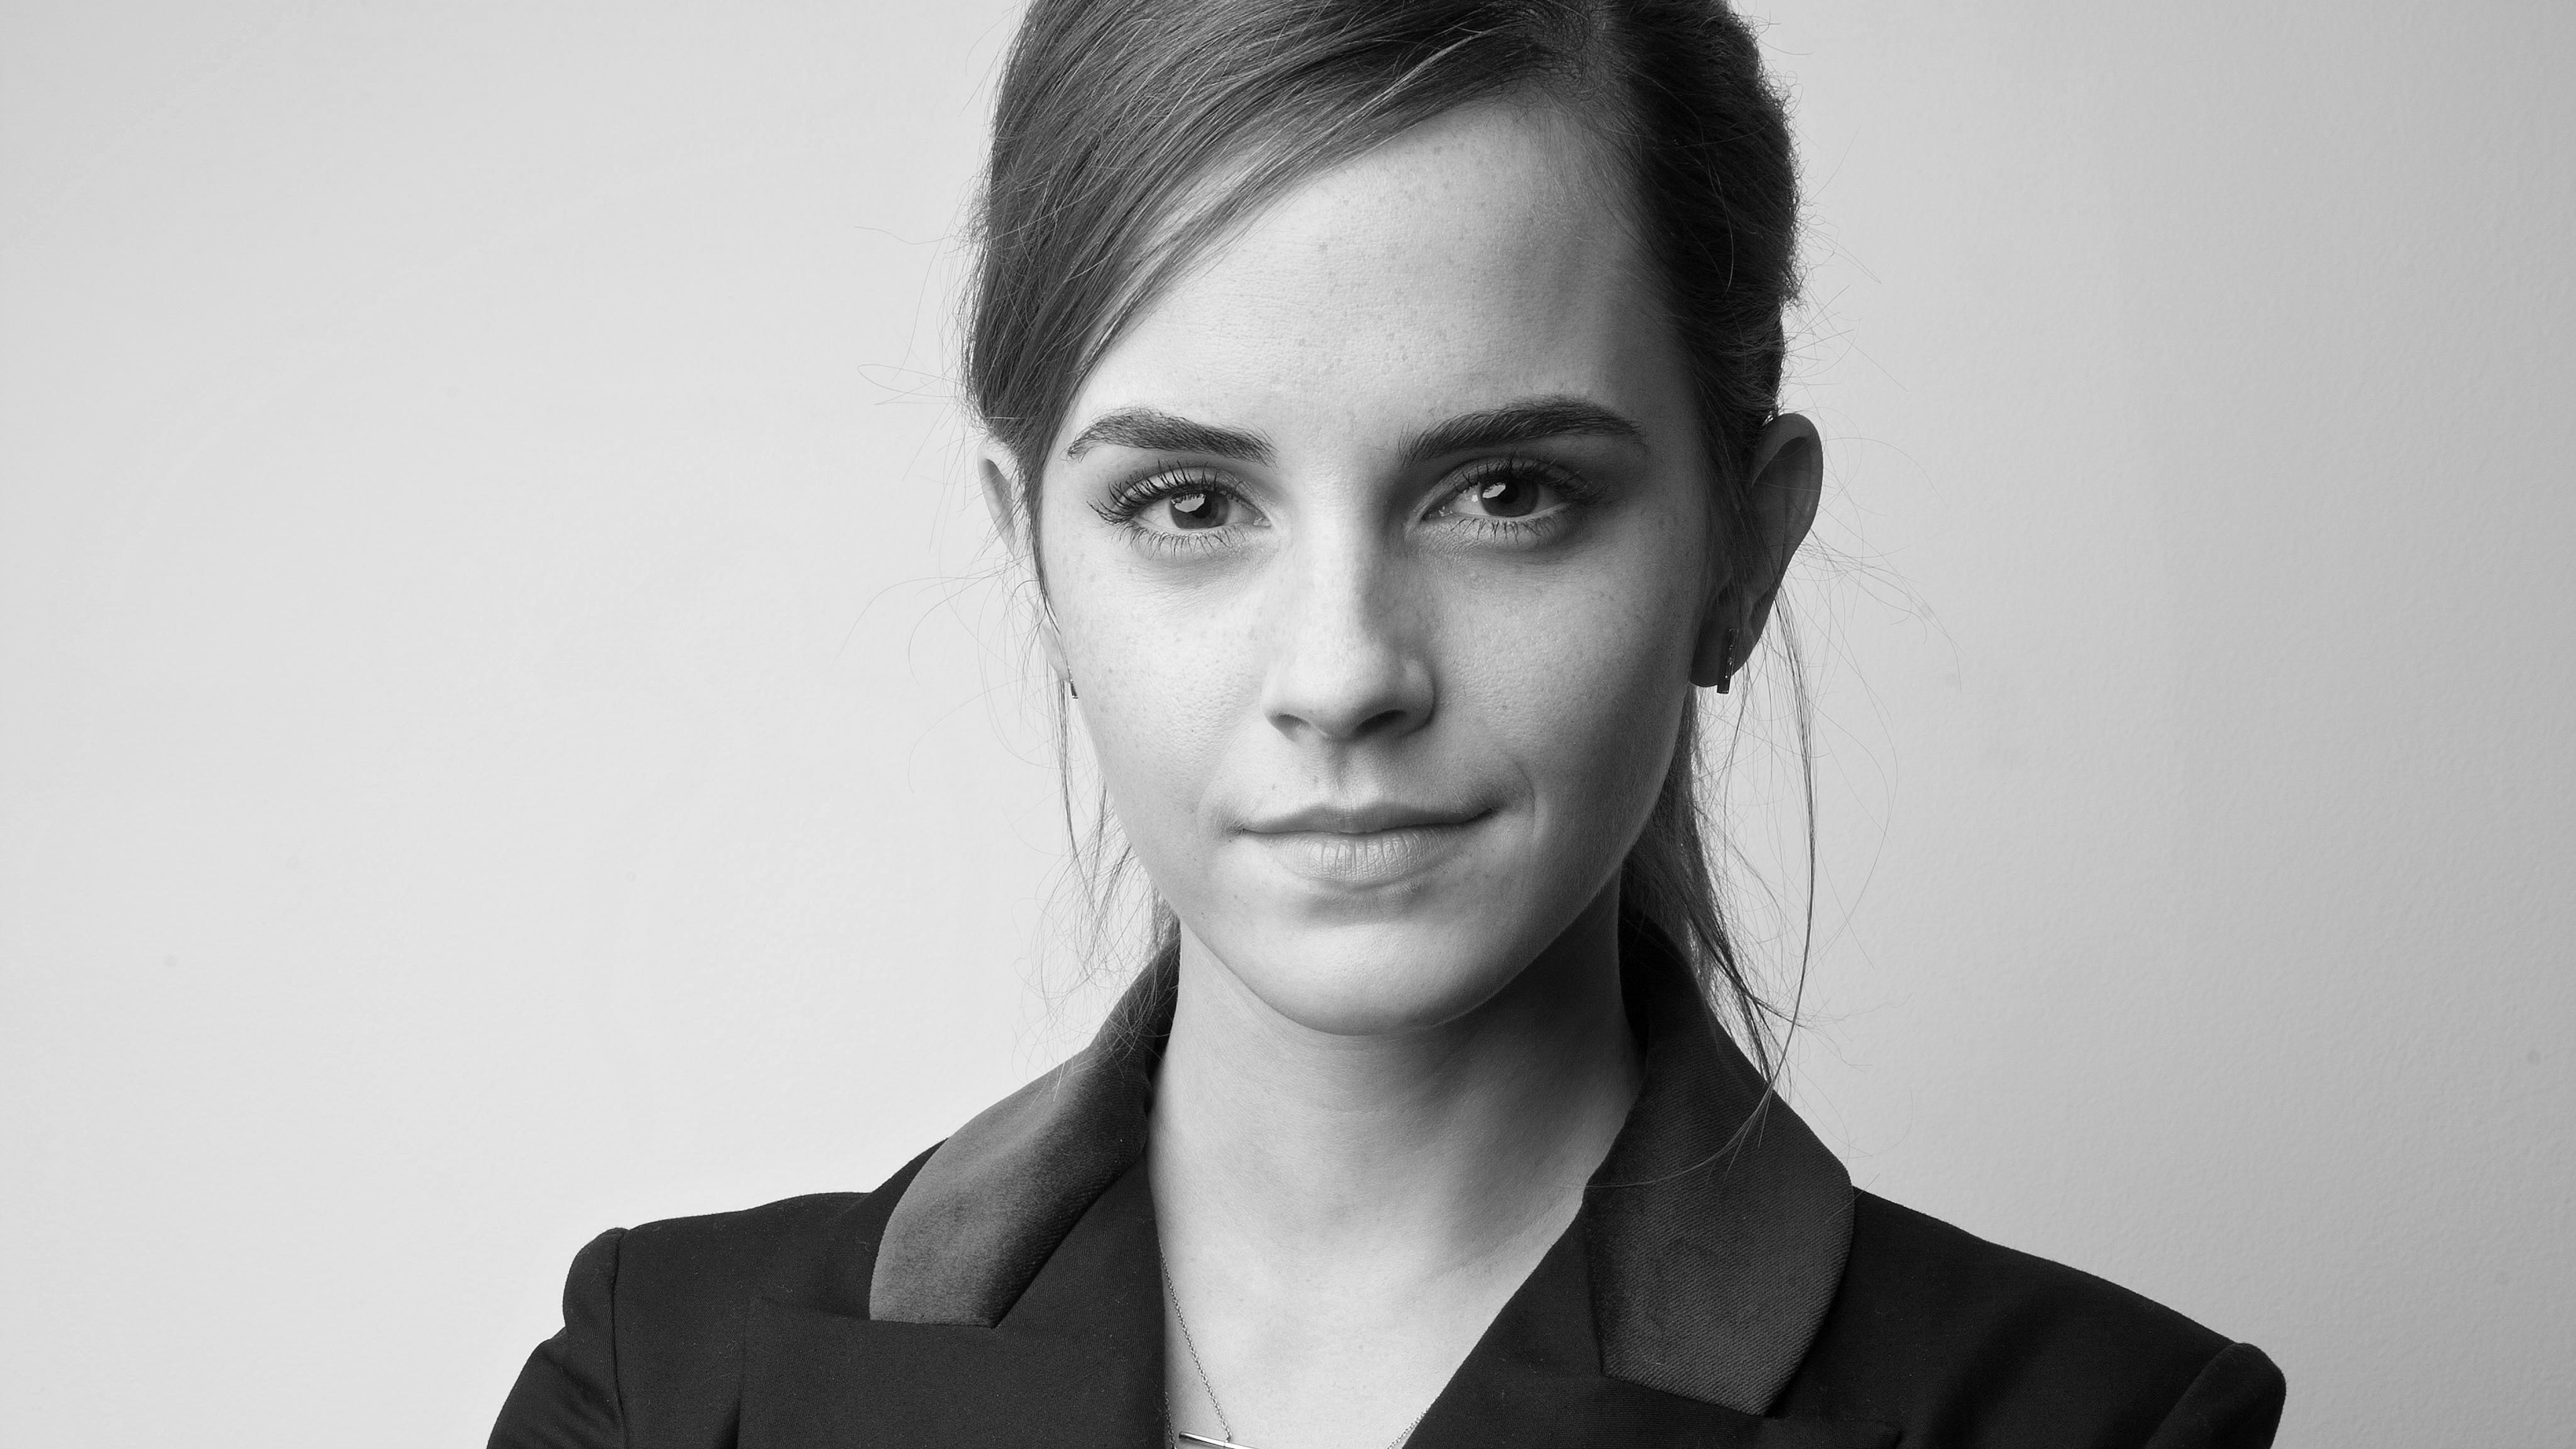 Emma Watson 2019 4k - Emma Watson Black And White - HD Wallpaper 